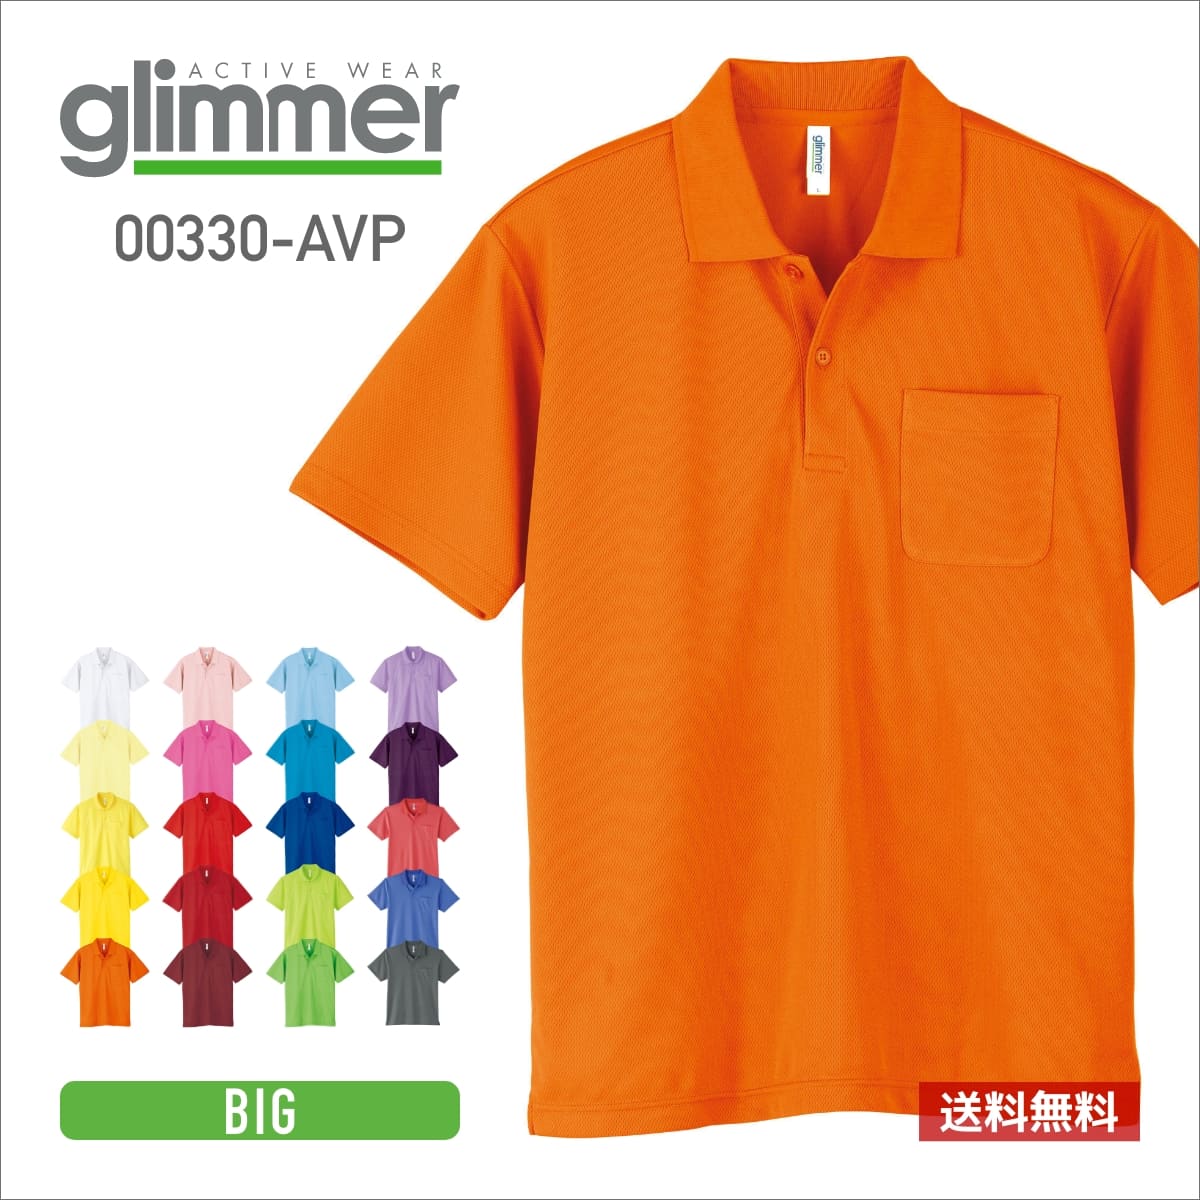 ポロシャツ メンズ 半袖 glimmer グリマー 4.4オンス ドライ ポロシャツ ポケット付 00330-AVP 送料無料 男女兼用 ビ…